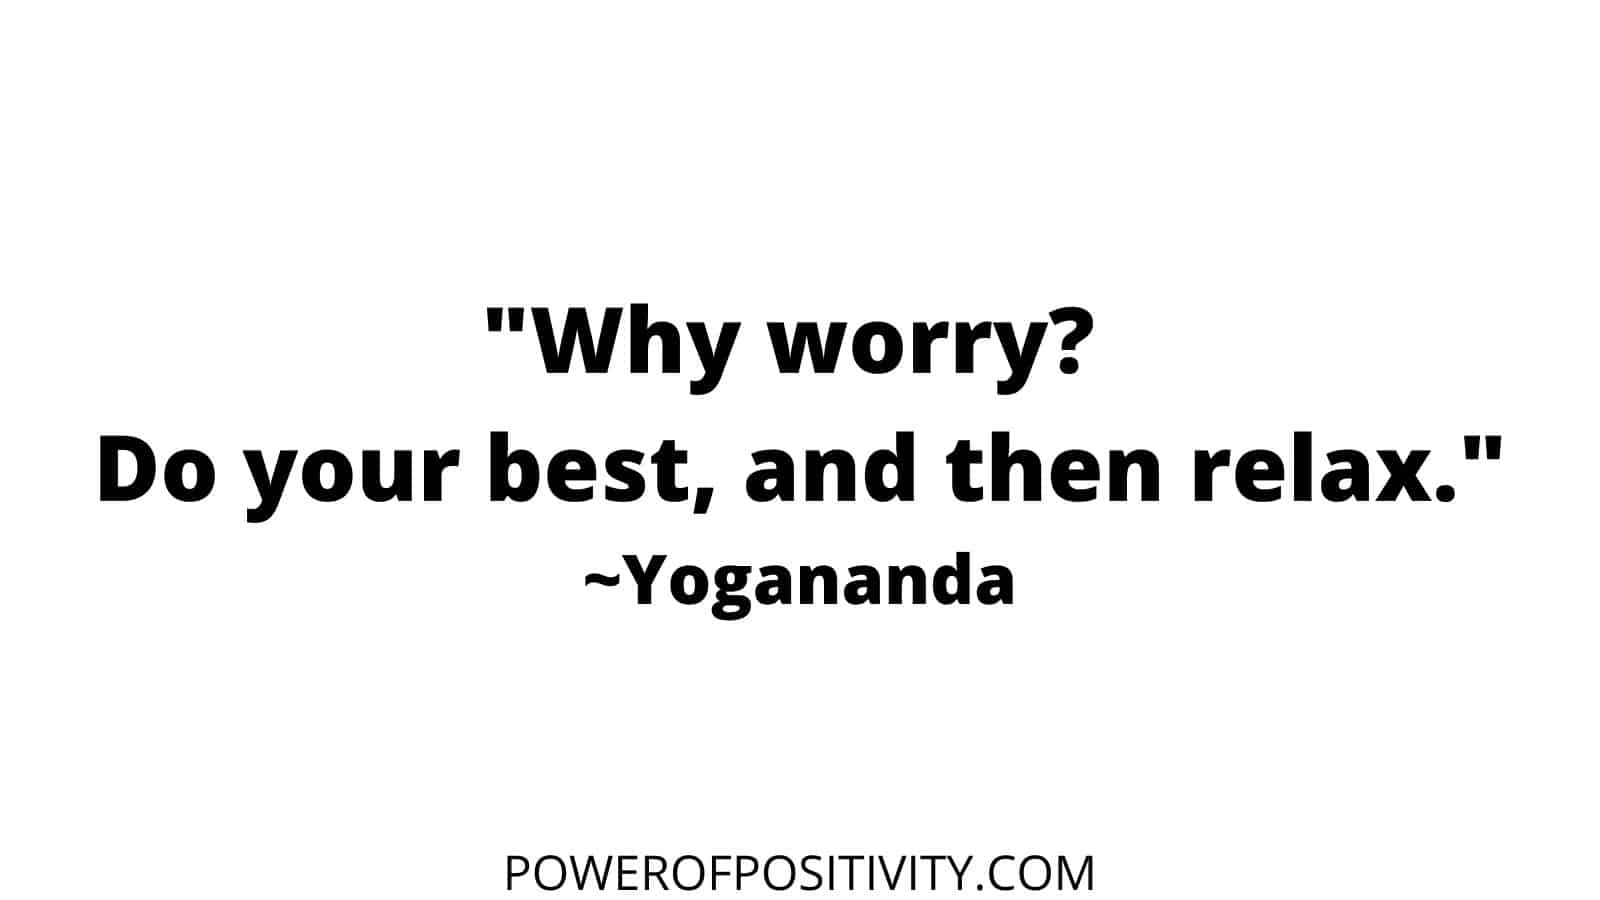 yogananda quote